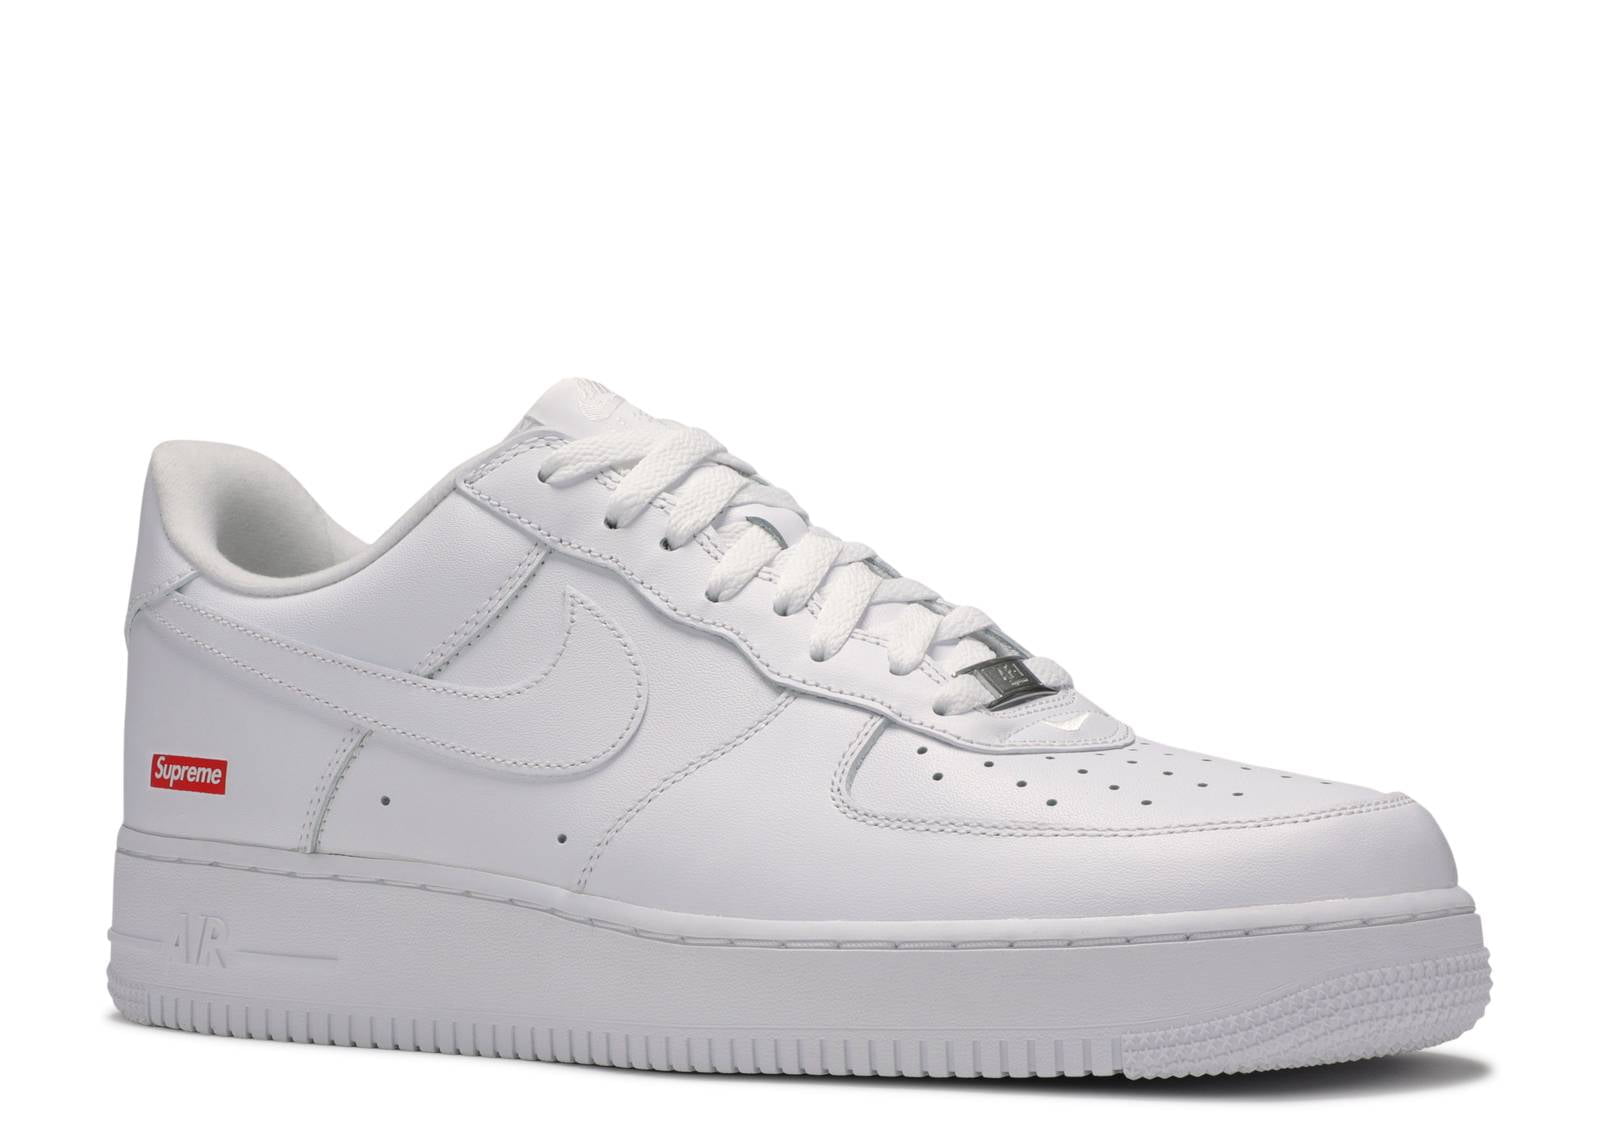 Nike Nike Air Force 1 Supreme 07 White